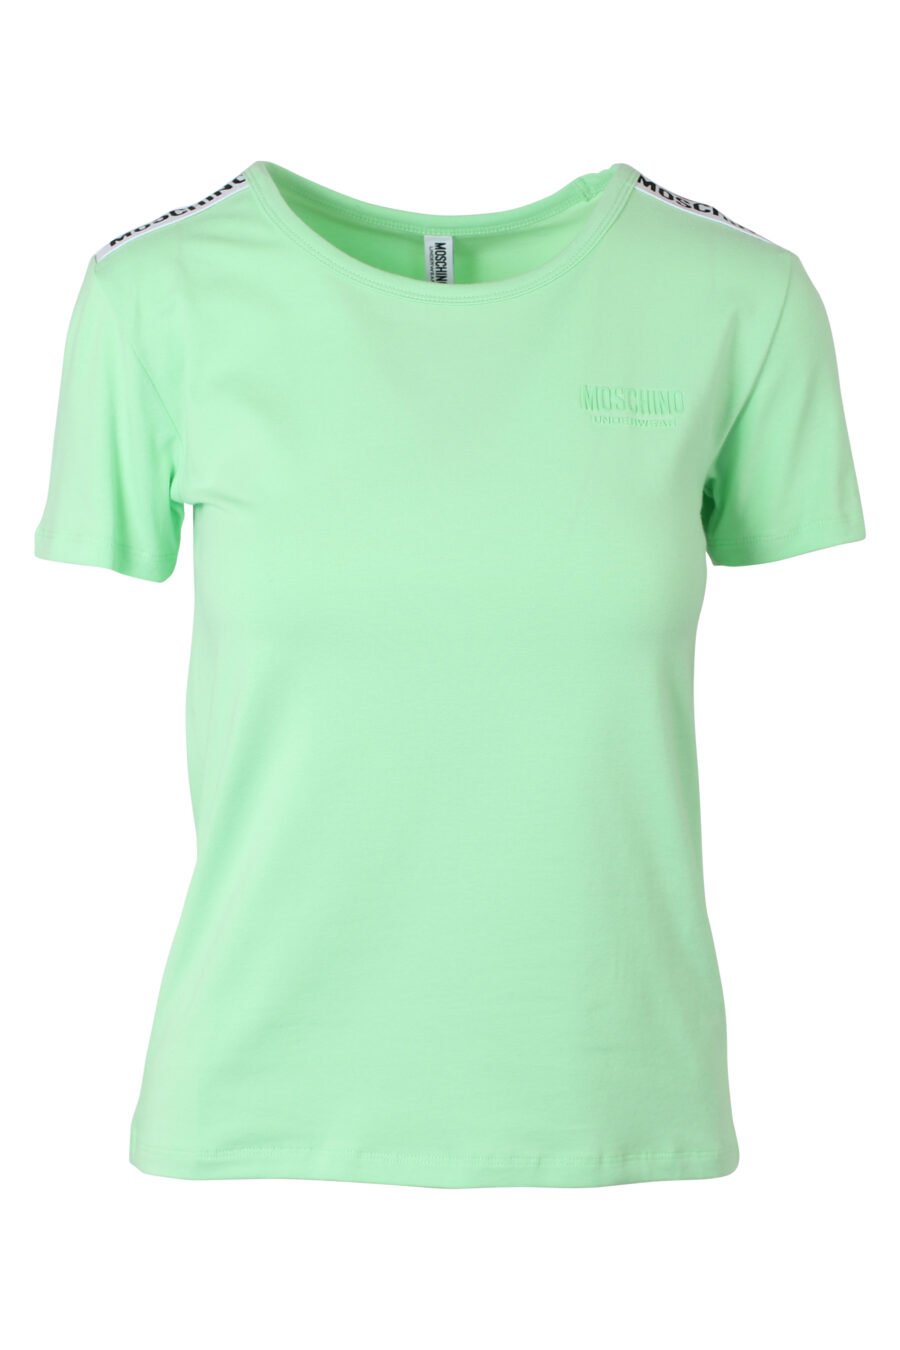 T-shirt slim vert menthe avec logo sur les épaules - IMG 9788